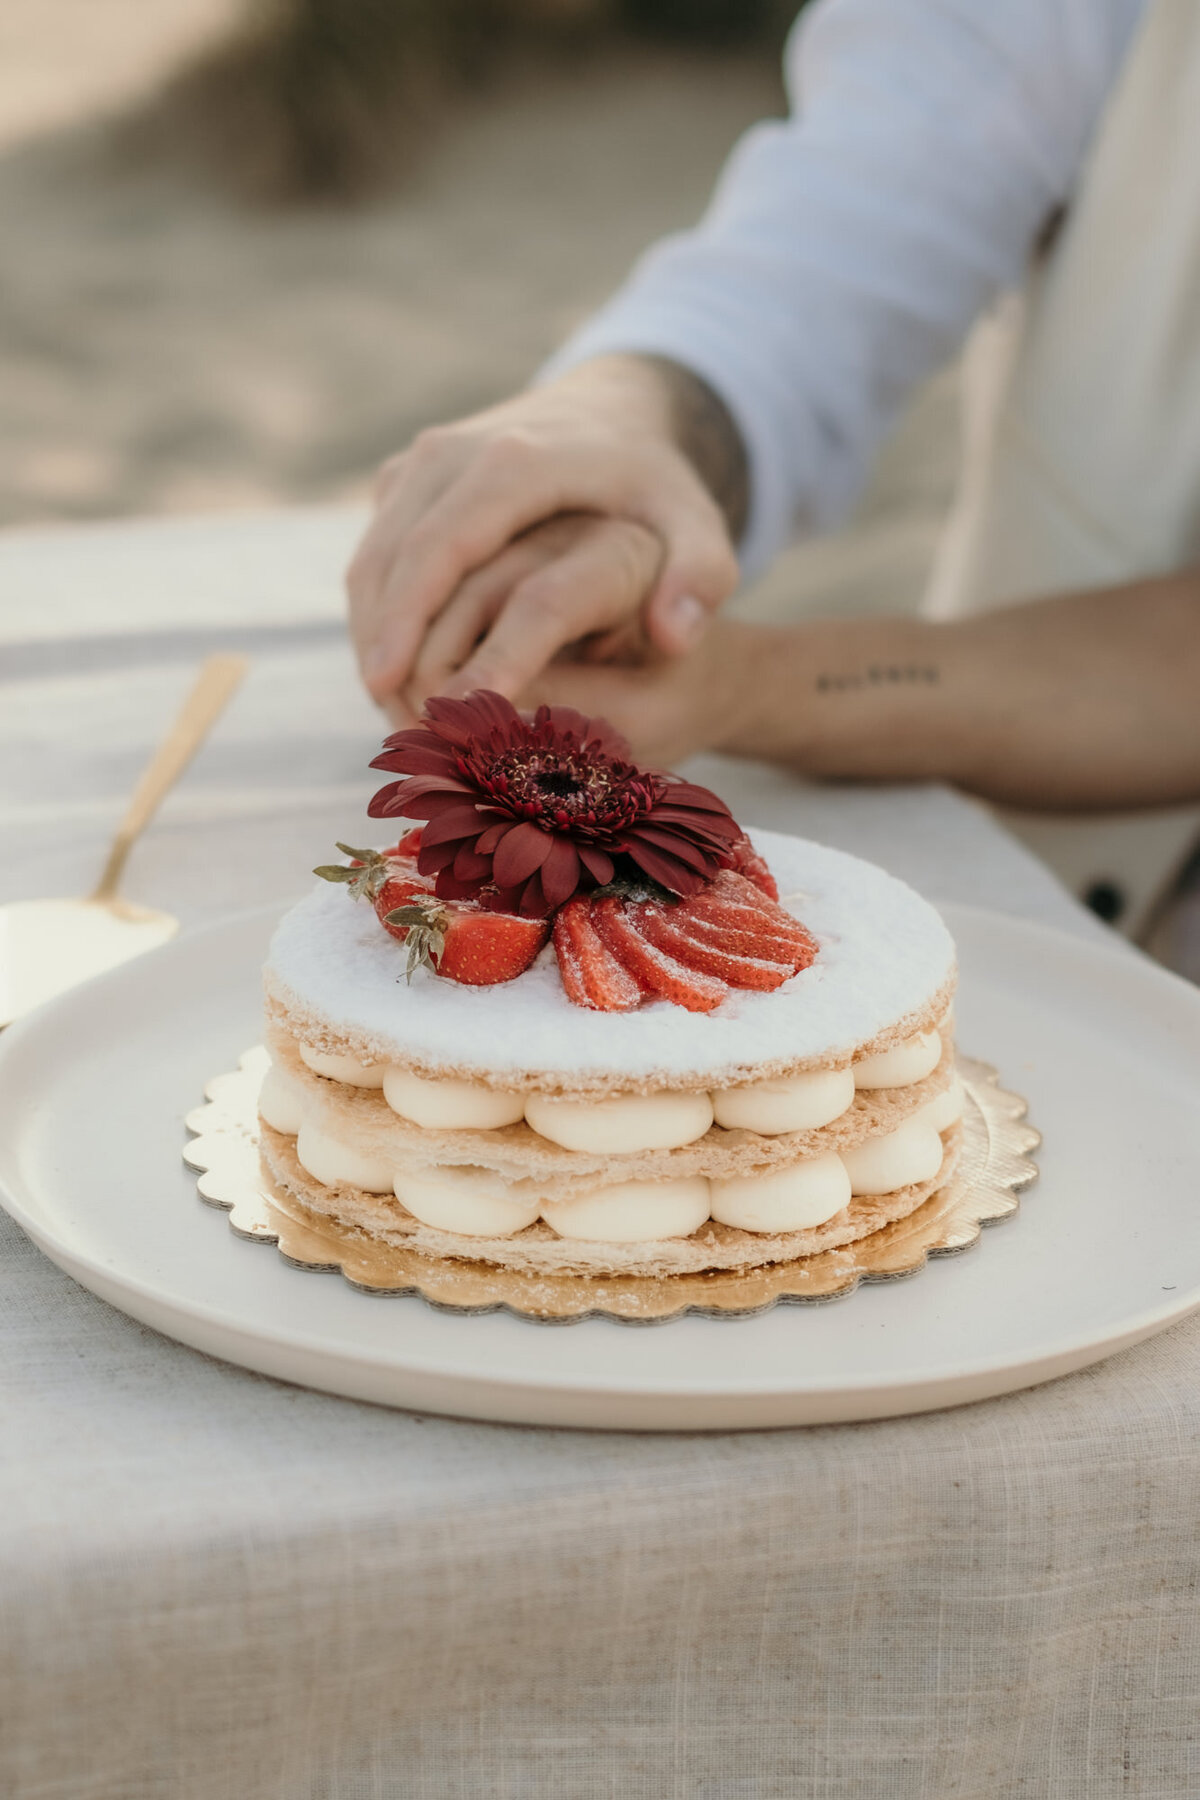 Das Hochzeitspaar schneidet einen kleinen Naked Cake an, der mit Erdbeeren und einer roten Blüte dekoriert ist.